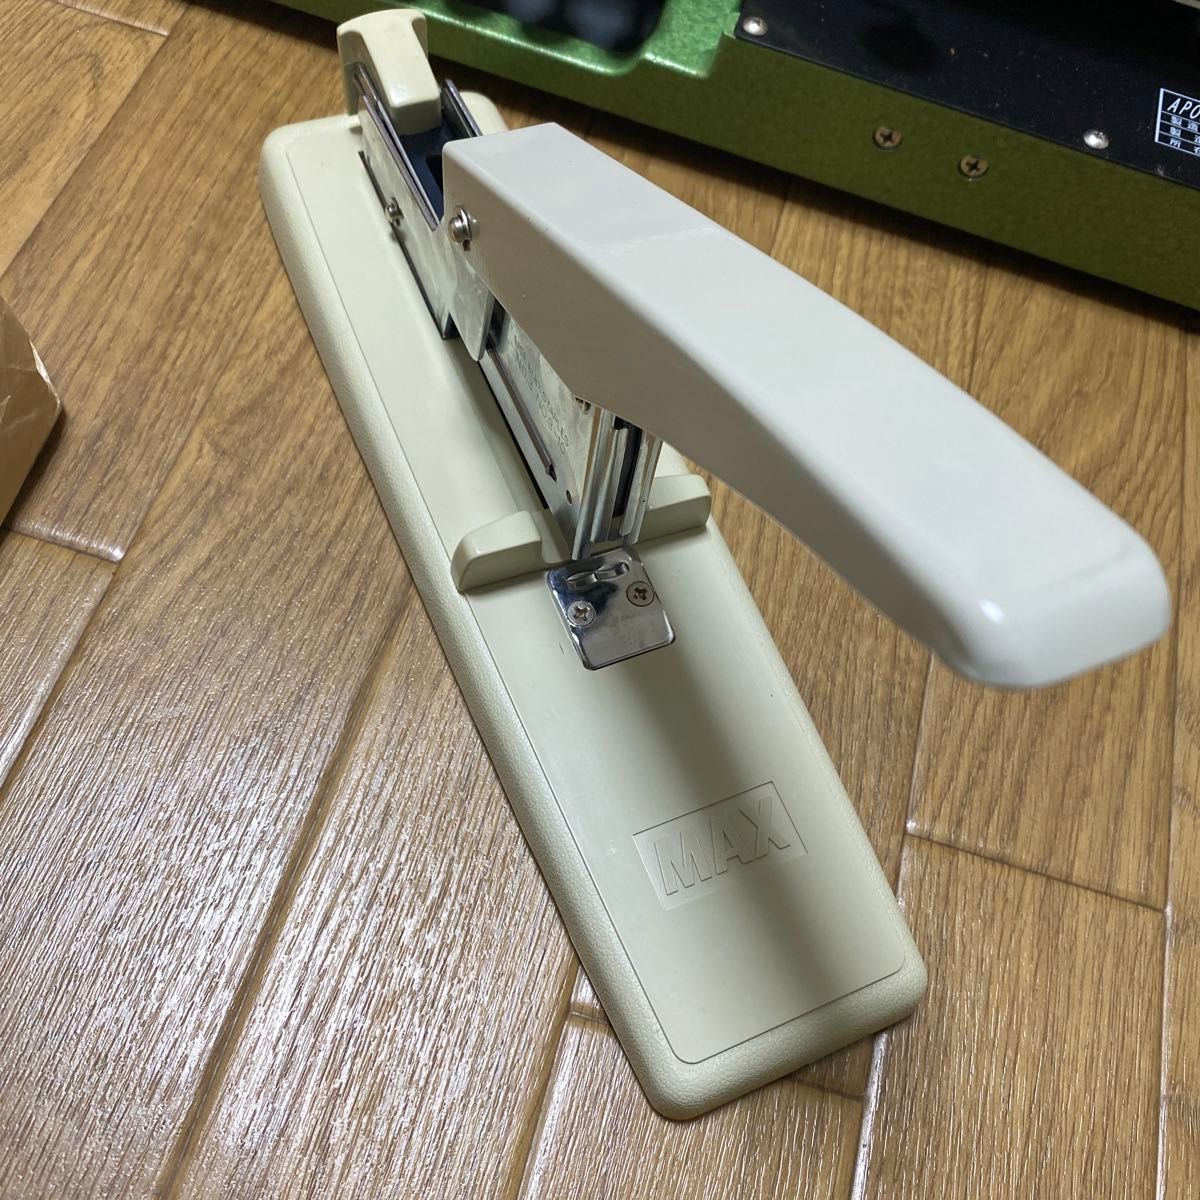 日本盲人用具開発センター 点字タイプライター  APOLLO BRAILLER ホッチキス　用紙セット